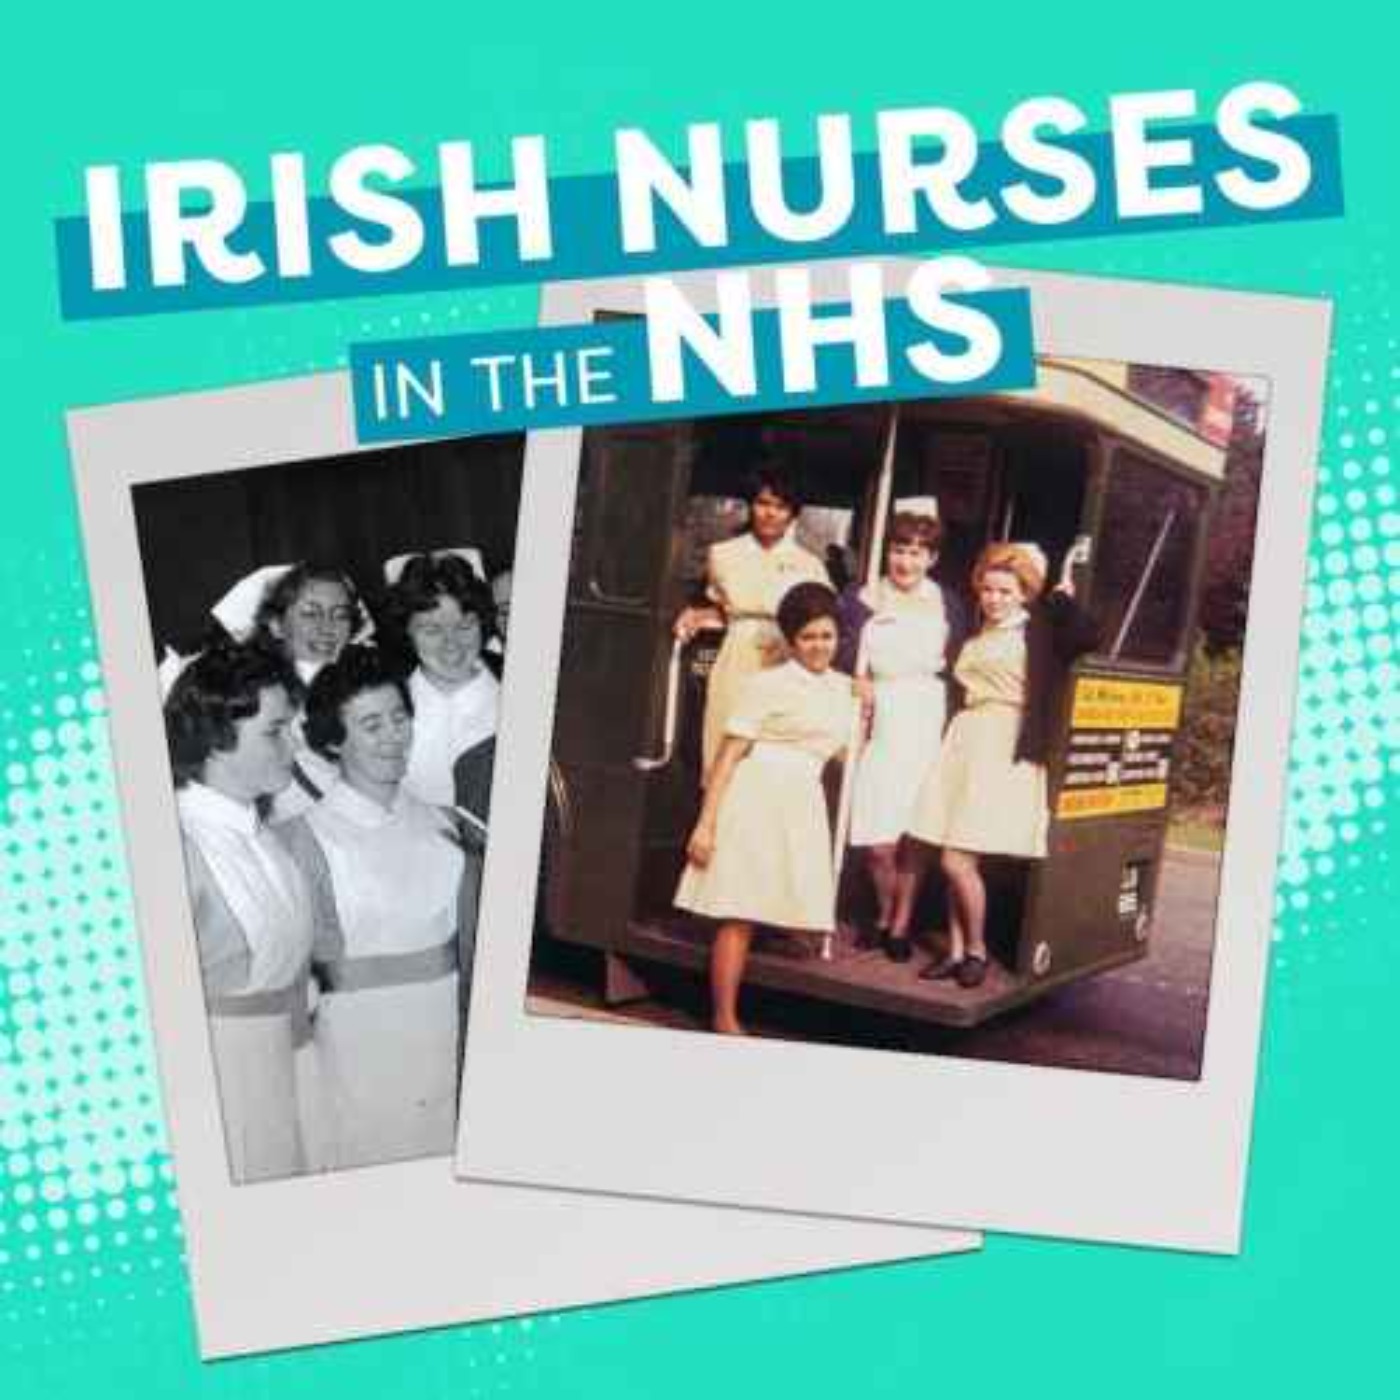 Nurse's experiences of anti-Irish discrimination in Britain